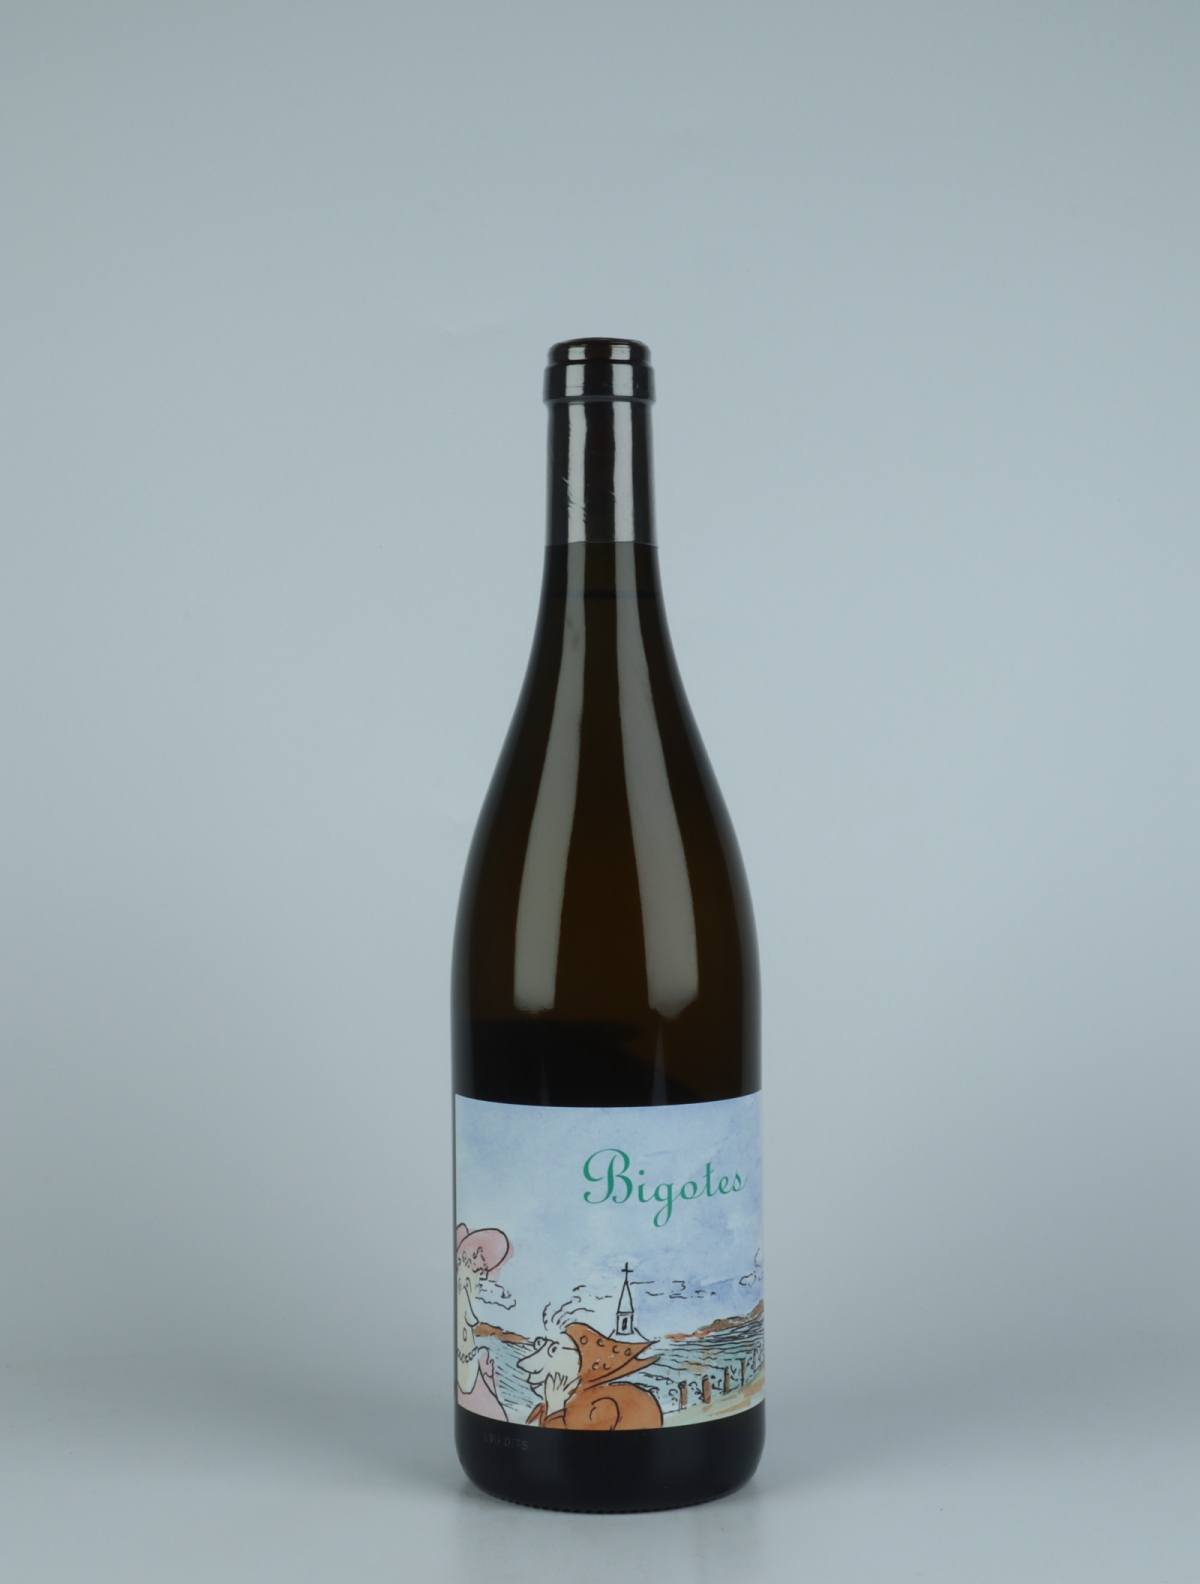 En flaske 2021 Bourgogne Blanc - Bigotes Hvidvin fra Frédéric Cossard, Bourgogne i Frankrig